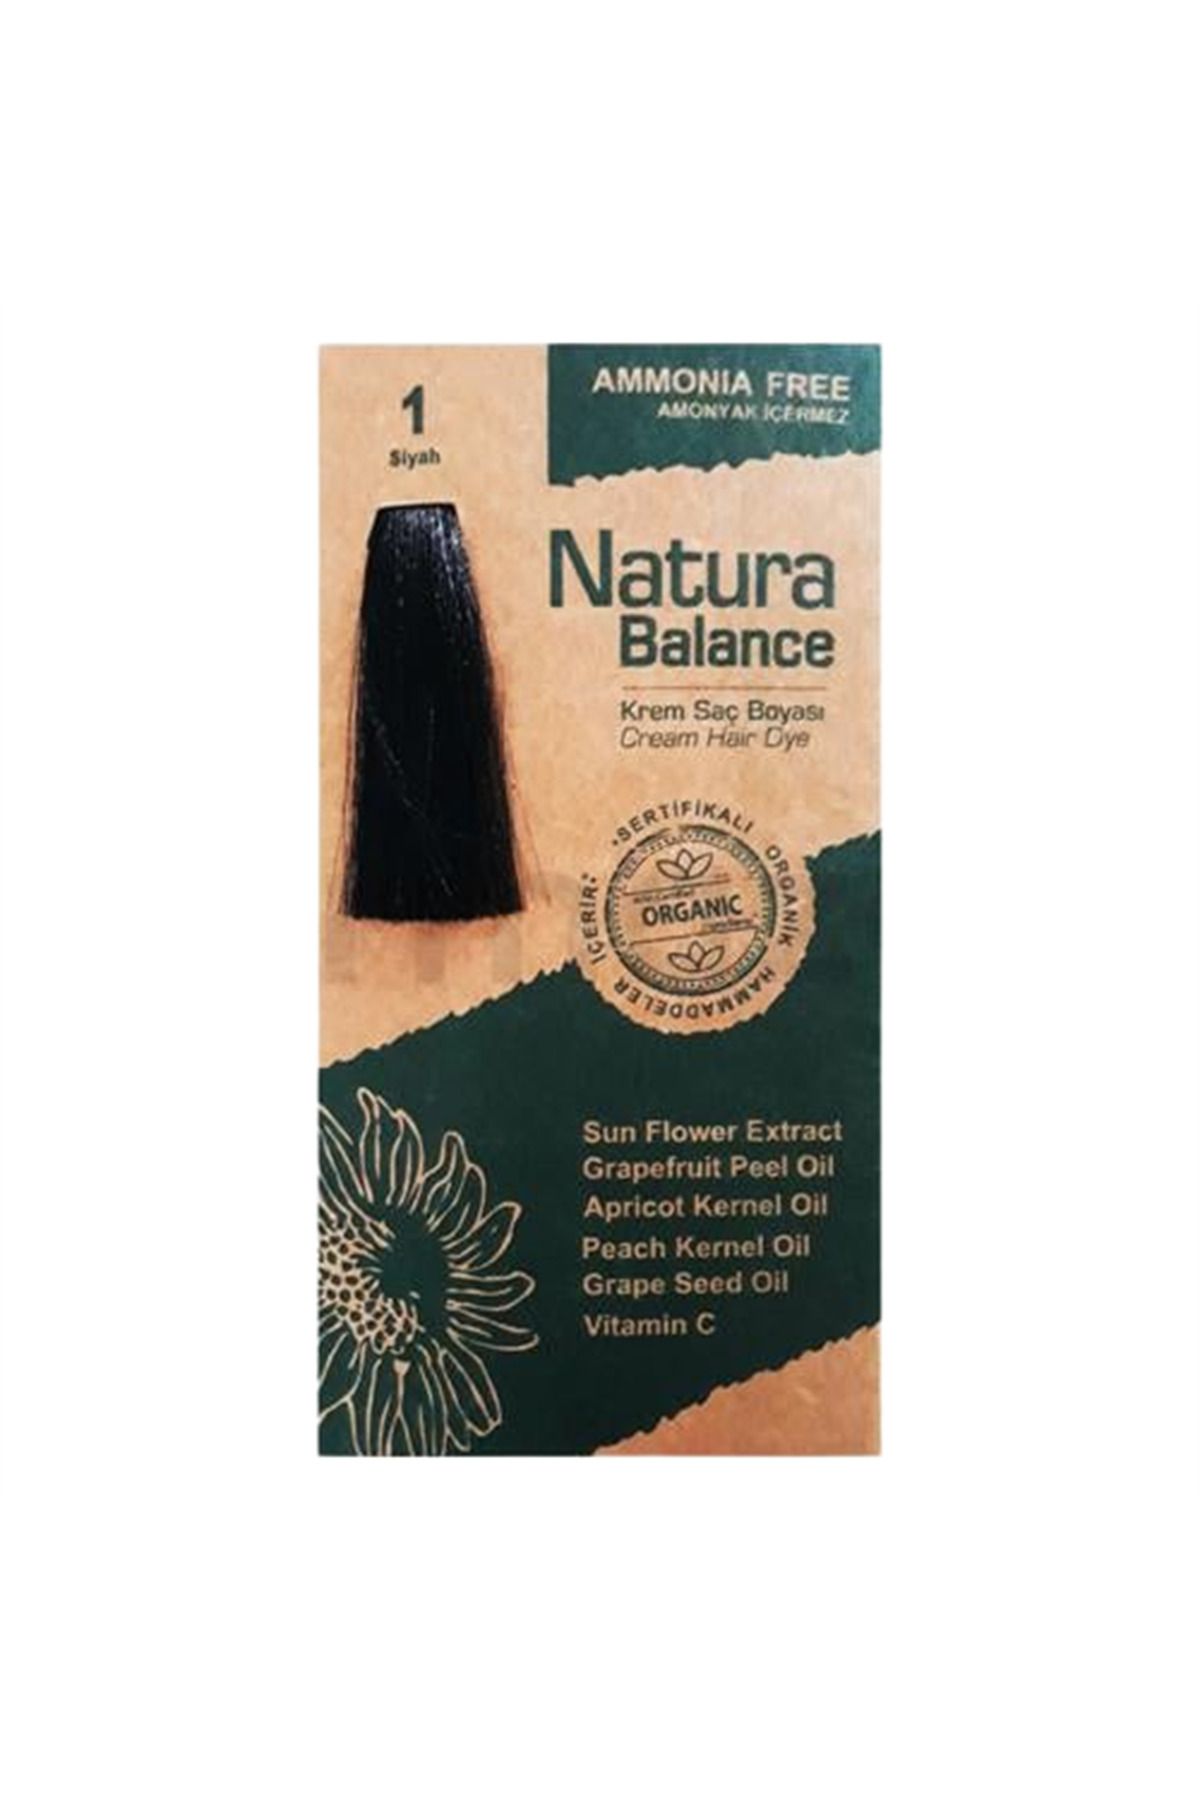 NATURABALANCE Natura Balance Organik Krem Saç Boyası 60 ml - 1 Siyah